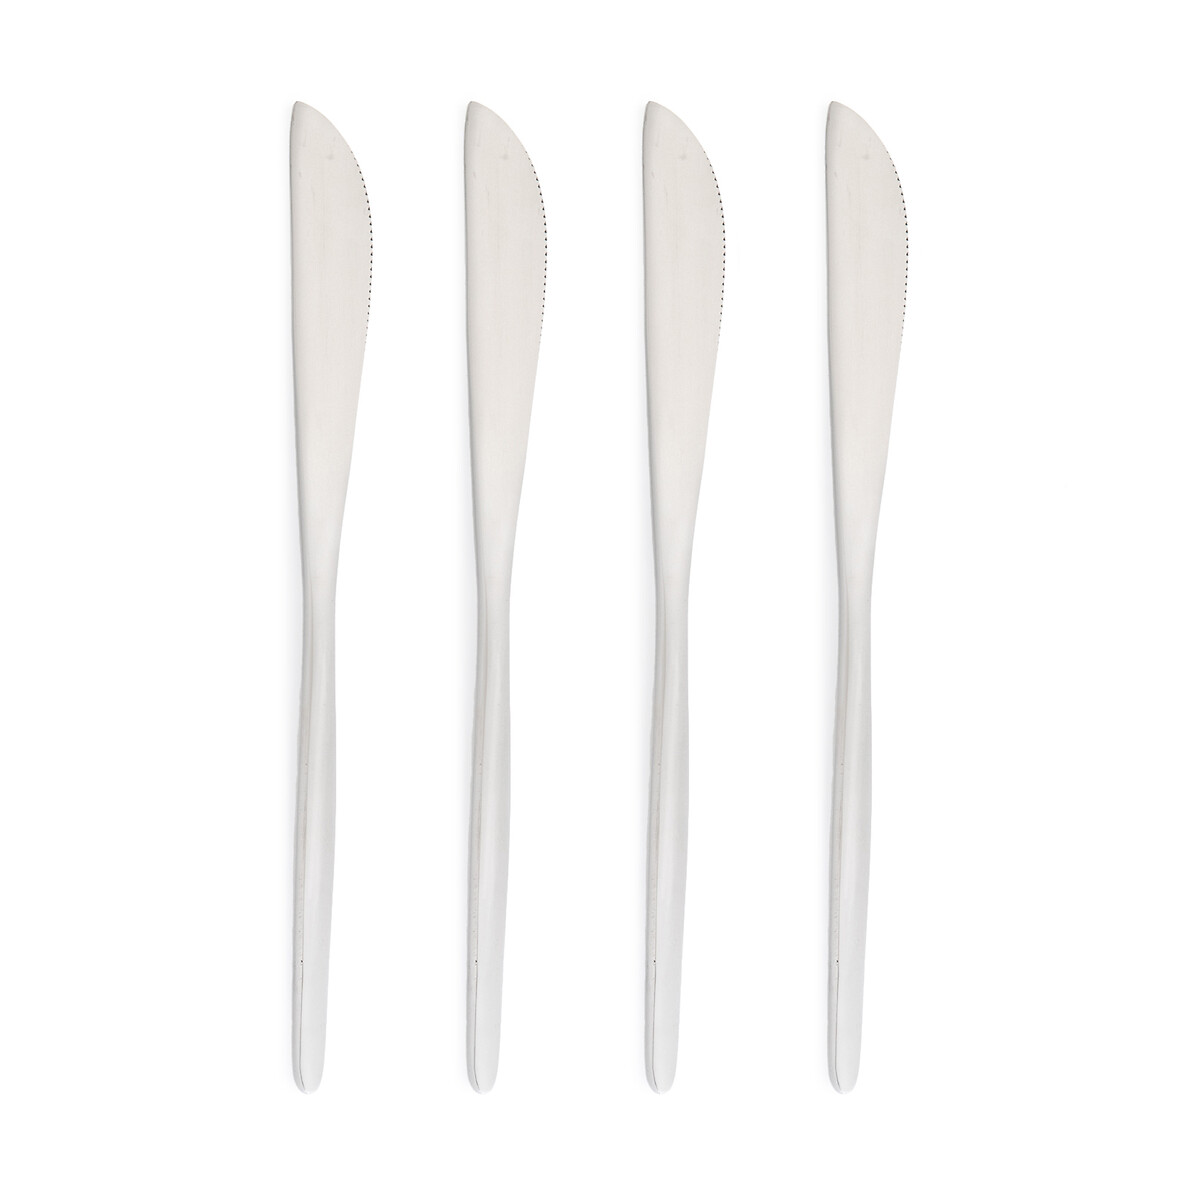 Комплект из 4 ножей Menella La Redoute единый размер серый комплект из 4 ножей из нержстали katherine единый размер серый